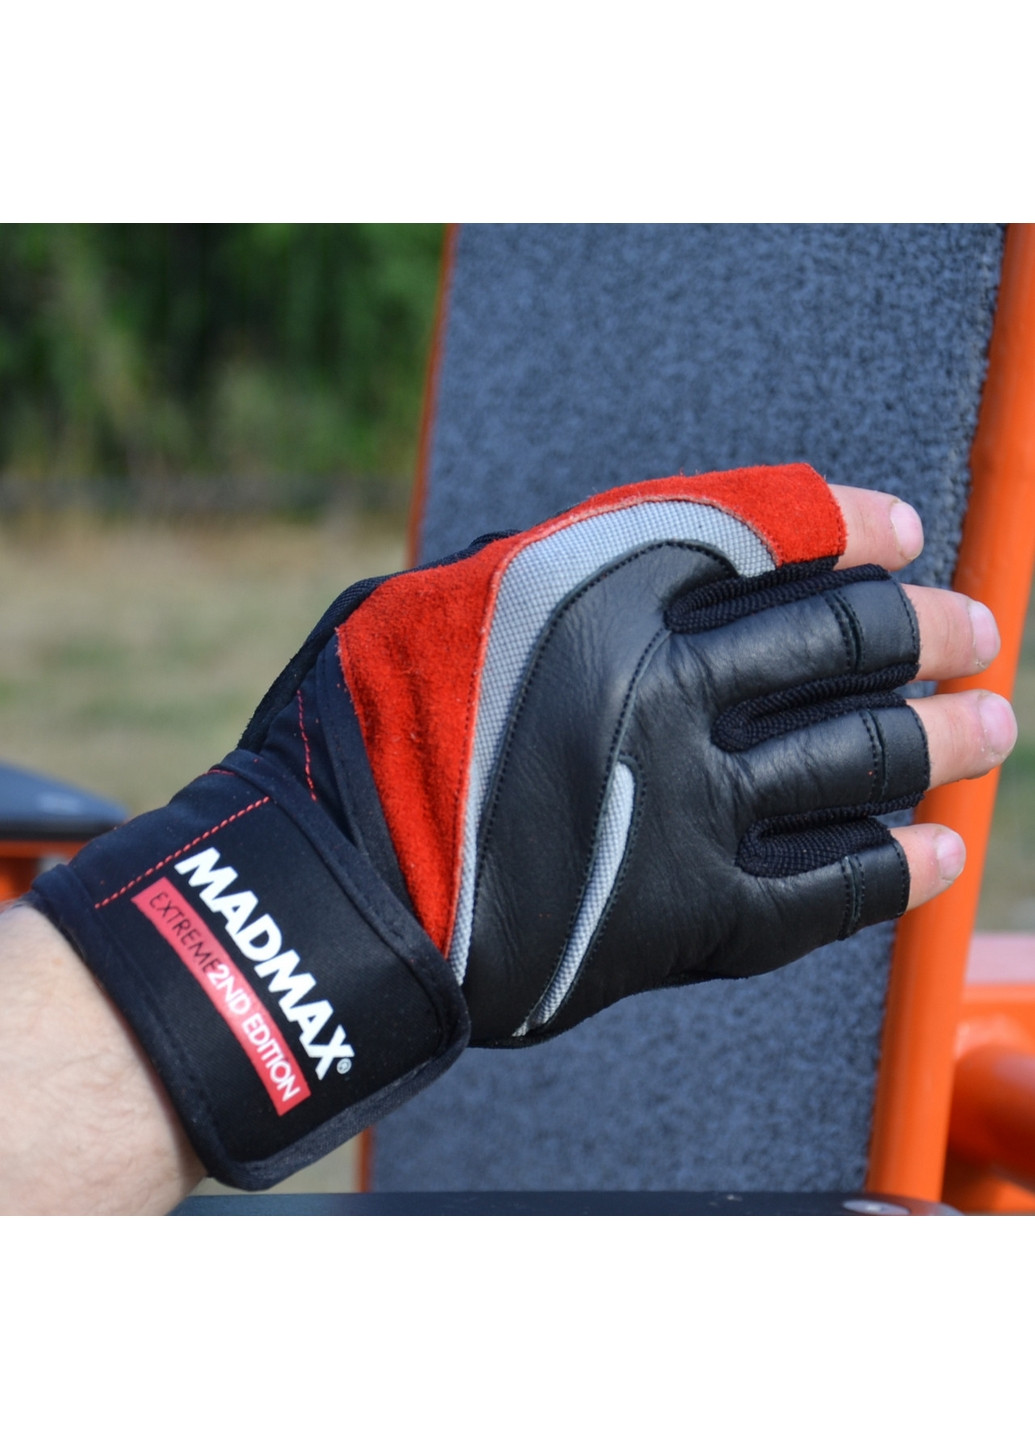 Унисекс перчатки для фитнеса L Mad Max (267660254)